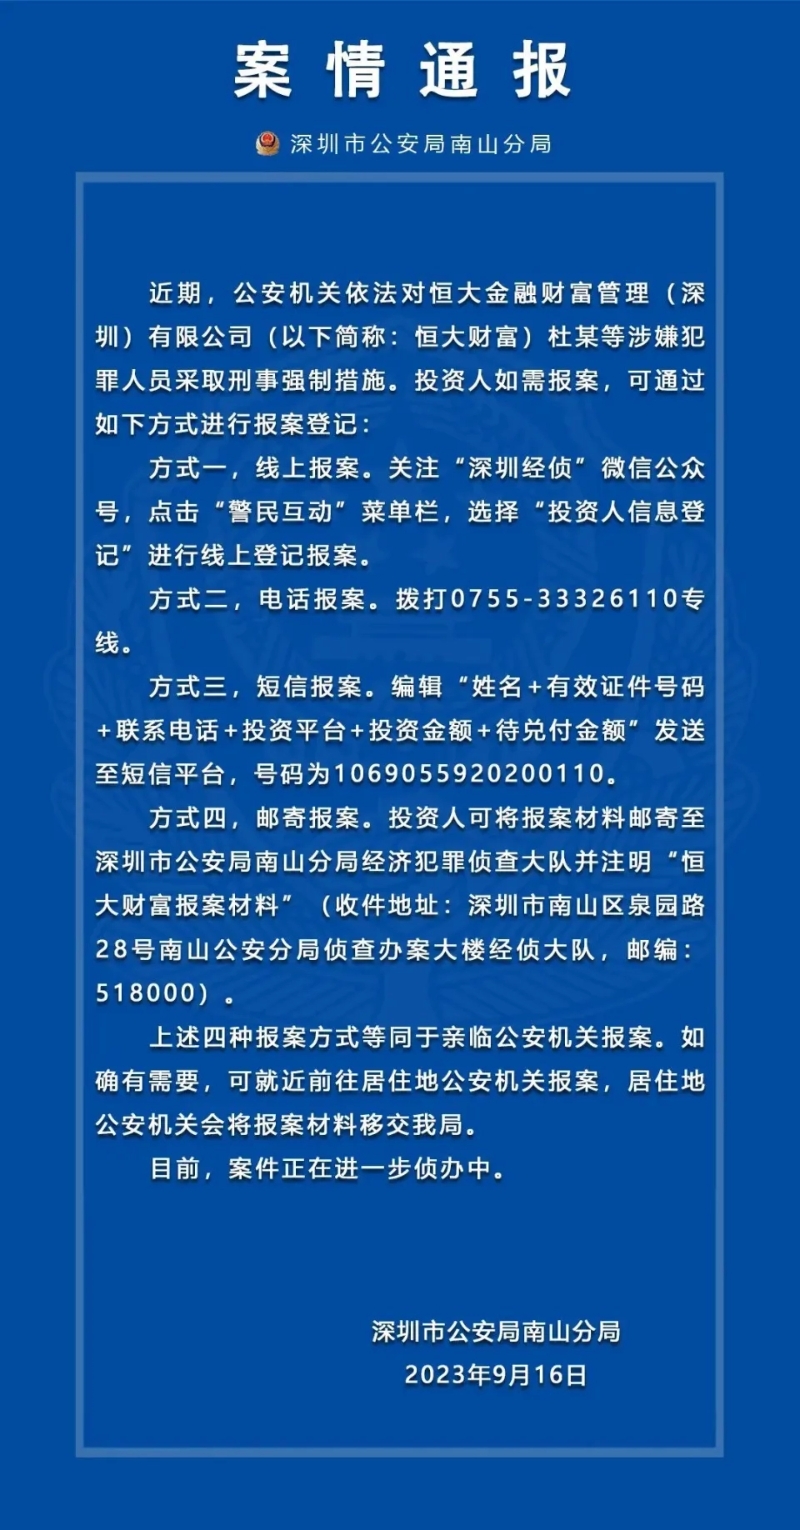 深圳公安发通报呼吁投资者报案。